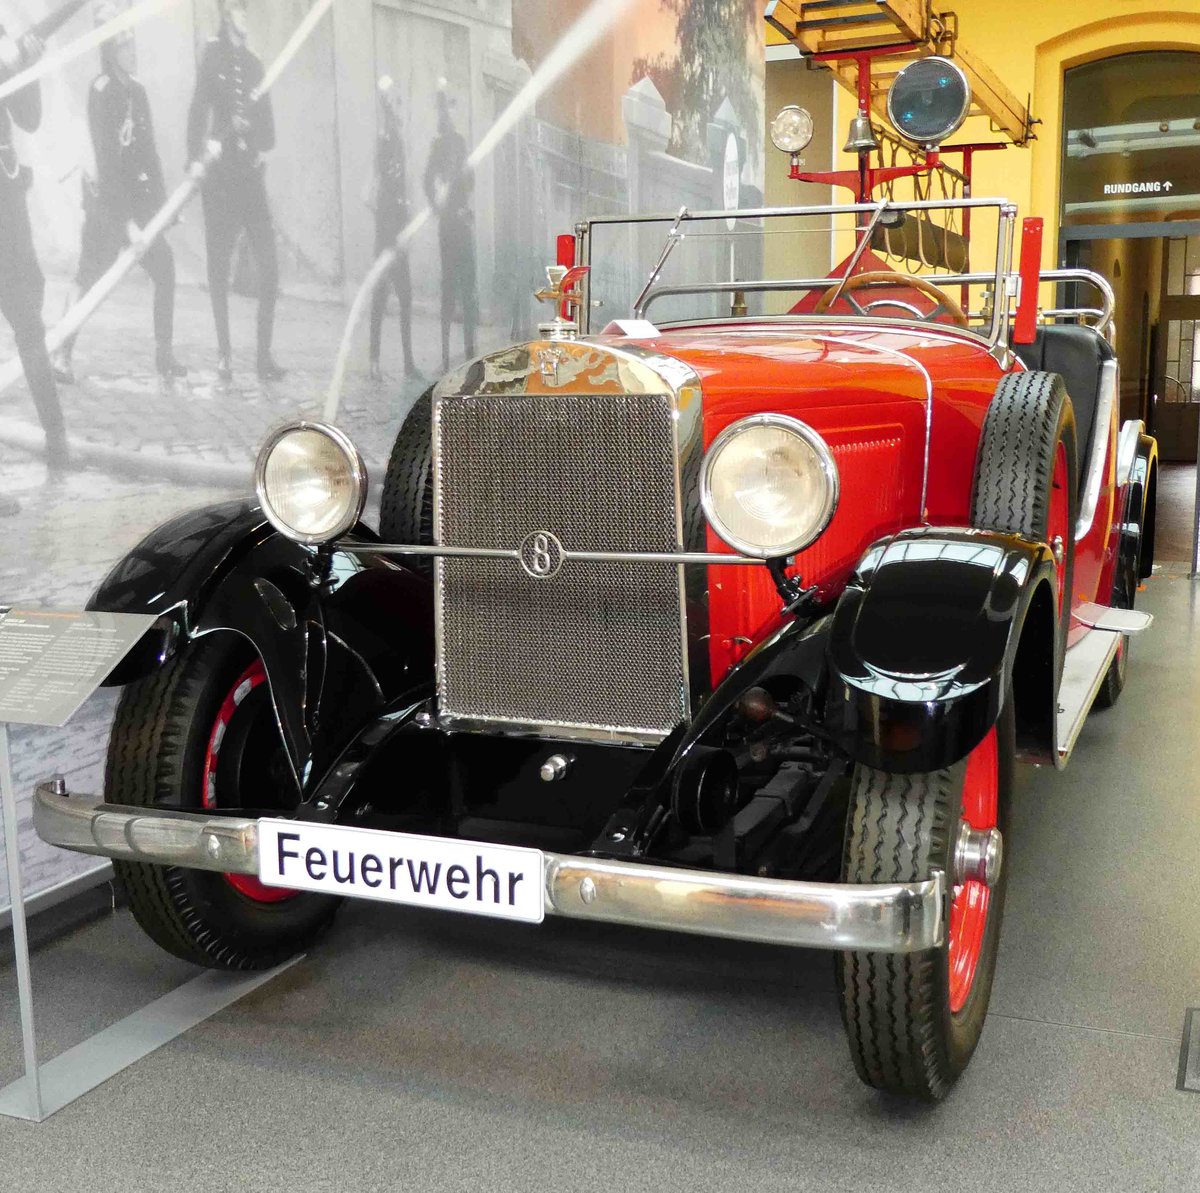 =Horch 303 Feuerwehr-Mannschaftswagen, Bj. 1929, 3132 ccm, 60 PS, 8Zyl.-Motor, ausgestellt im August Horch Museum Zwickau, Juli 2016.